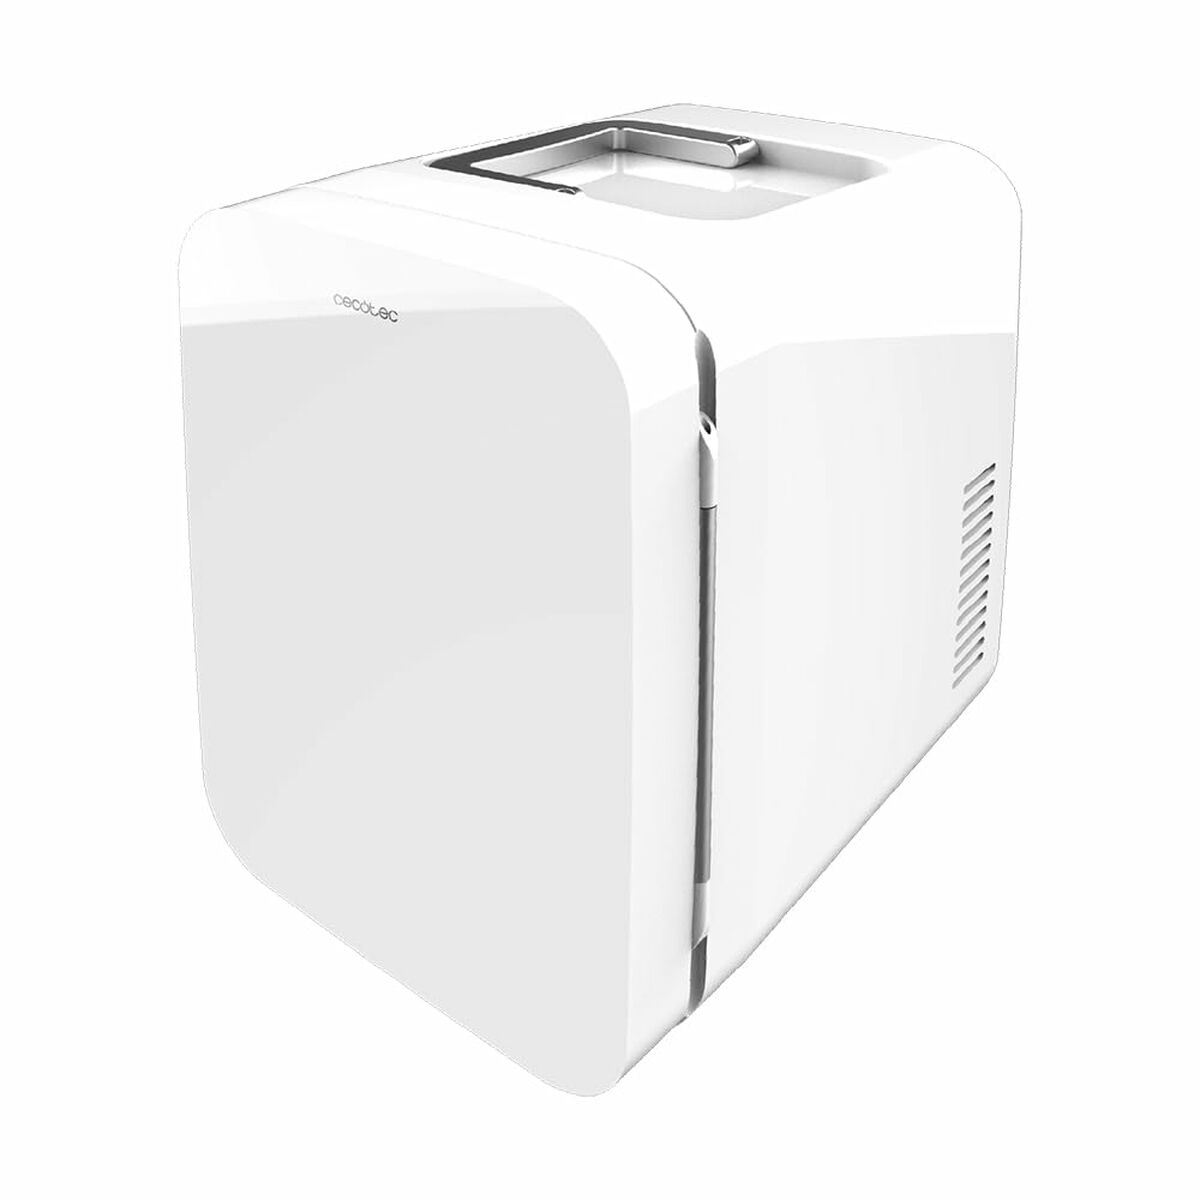 Mini-Kühlschrank Cecotec Bahamas Weiß